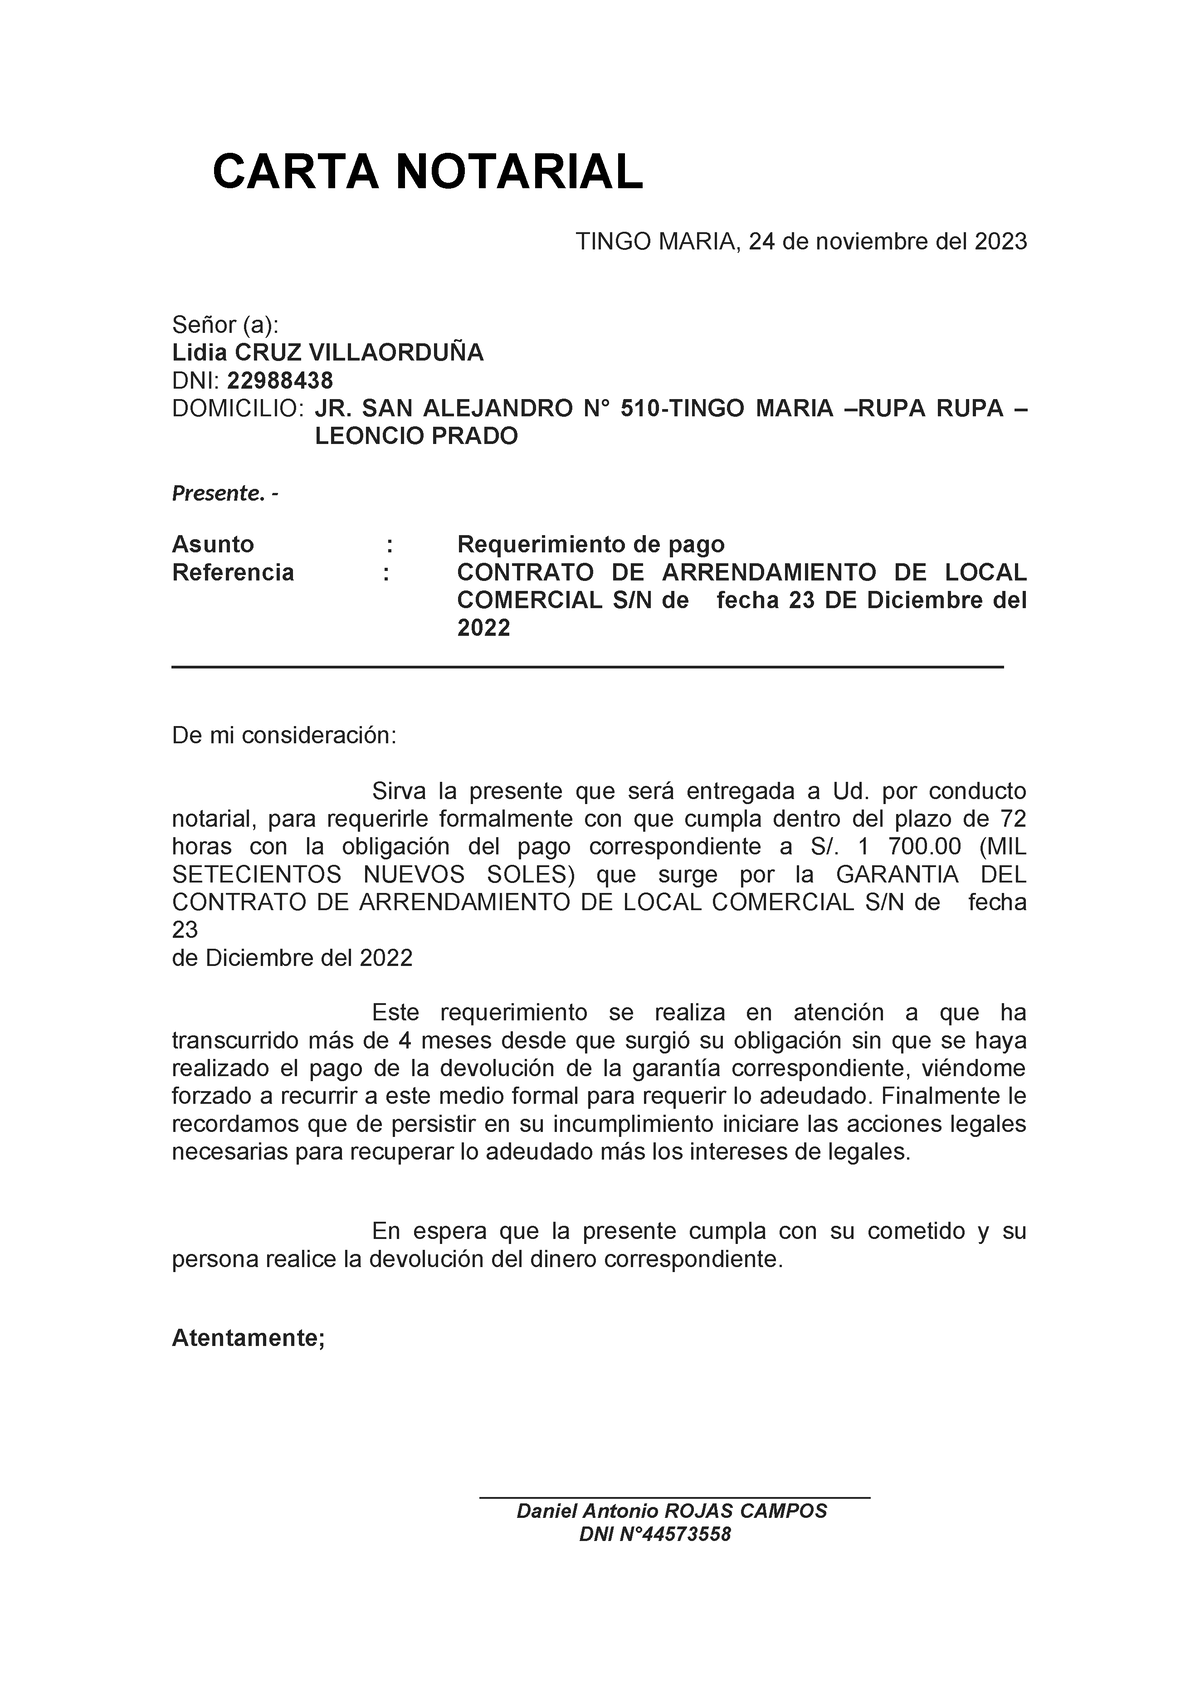 Modelo De Carta Notarial Carta Notarial Tingo Maria 24 De Noviembre Del 2023 Señor A Lidia 9713